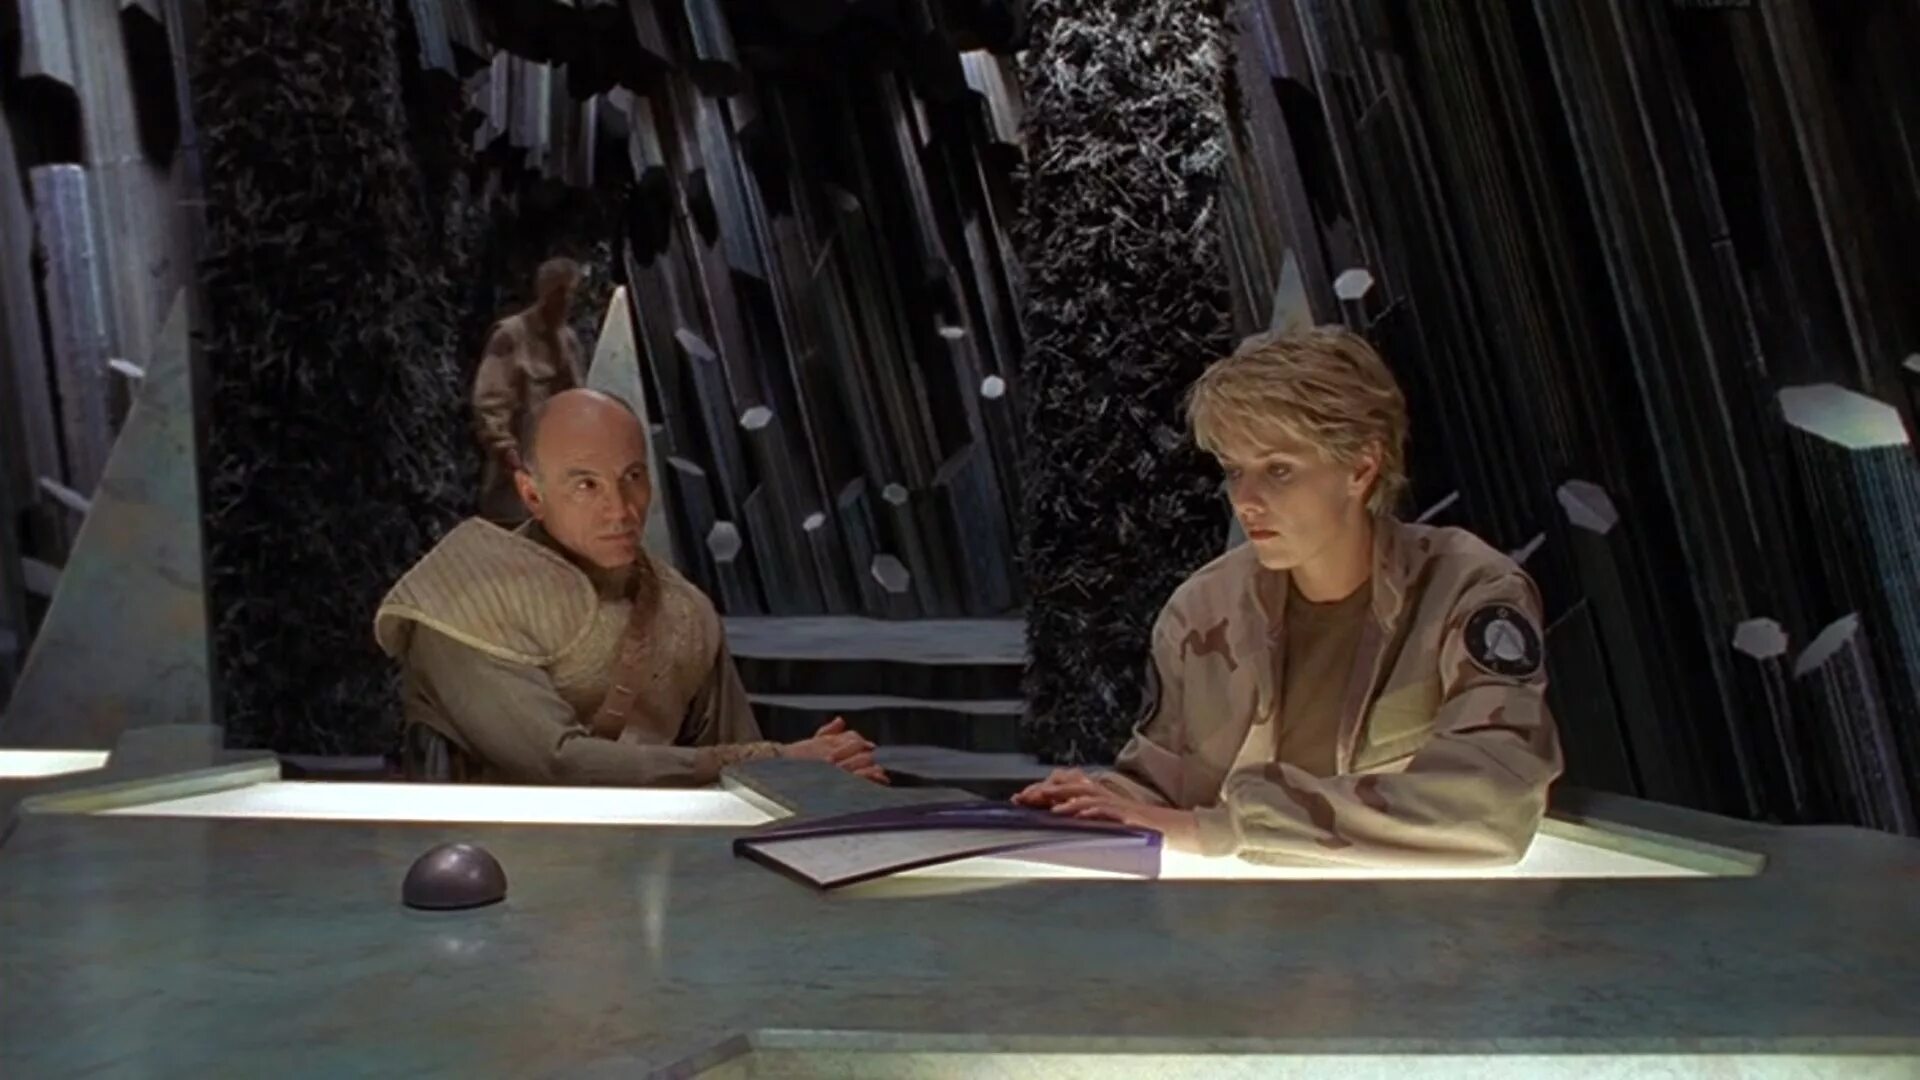 Звёздные врата: зв-1 (1997). Кармен Ардженциано Звёздные врата. Питер Уингфилд Звёздные врата. Звездные врата зв 1 6